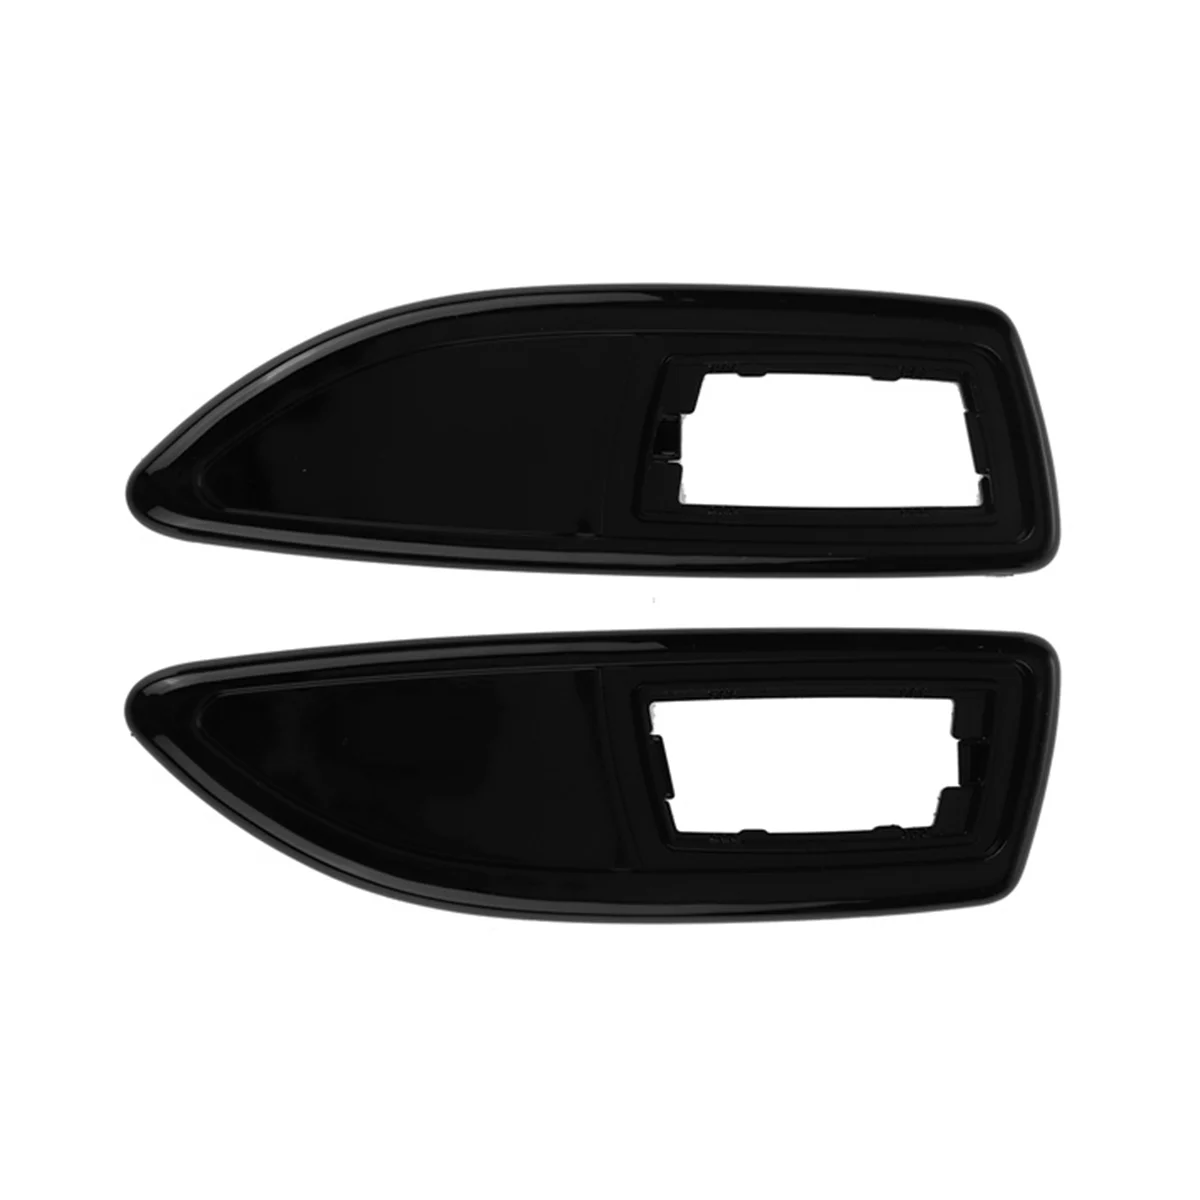 Ярко-черная Крышка бокового фонаря Крышка Бокового Габаритного фонаря для Corsa D VXR H/J Zaf B Corsa E 0